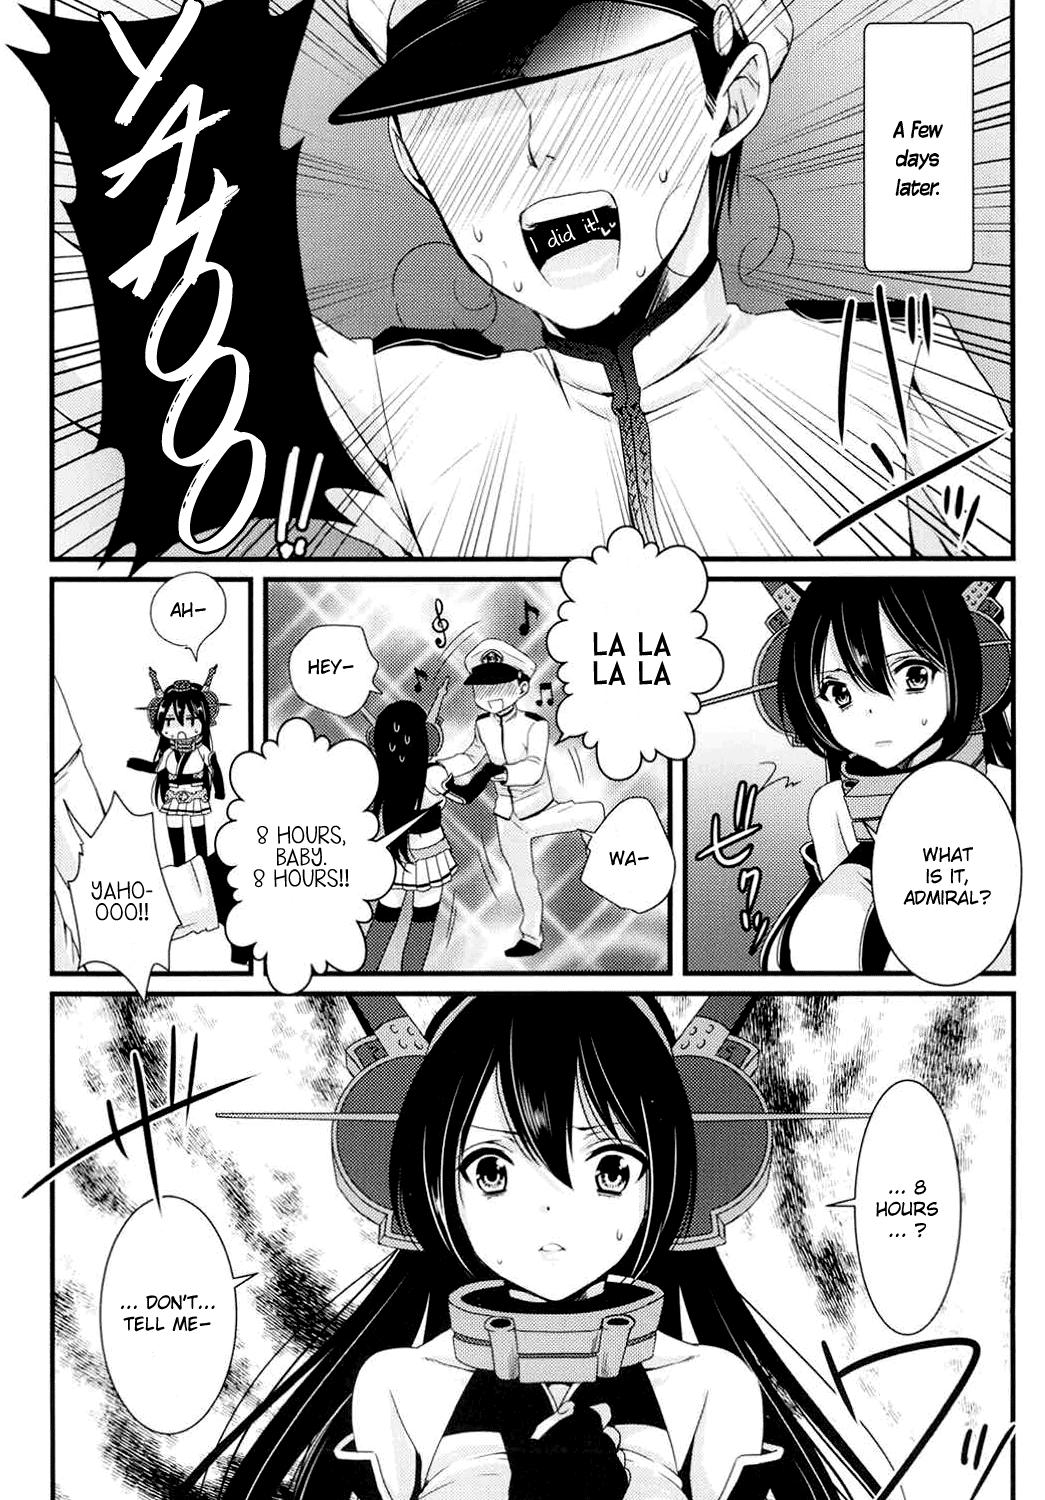 Saikin, Teitoku no Yousu ga Chotto Okashii no daga | Recently, the Admiral's been acting a bit strangely 3